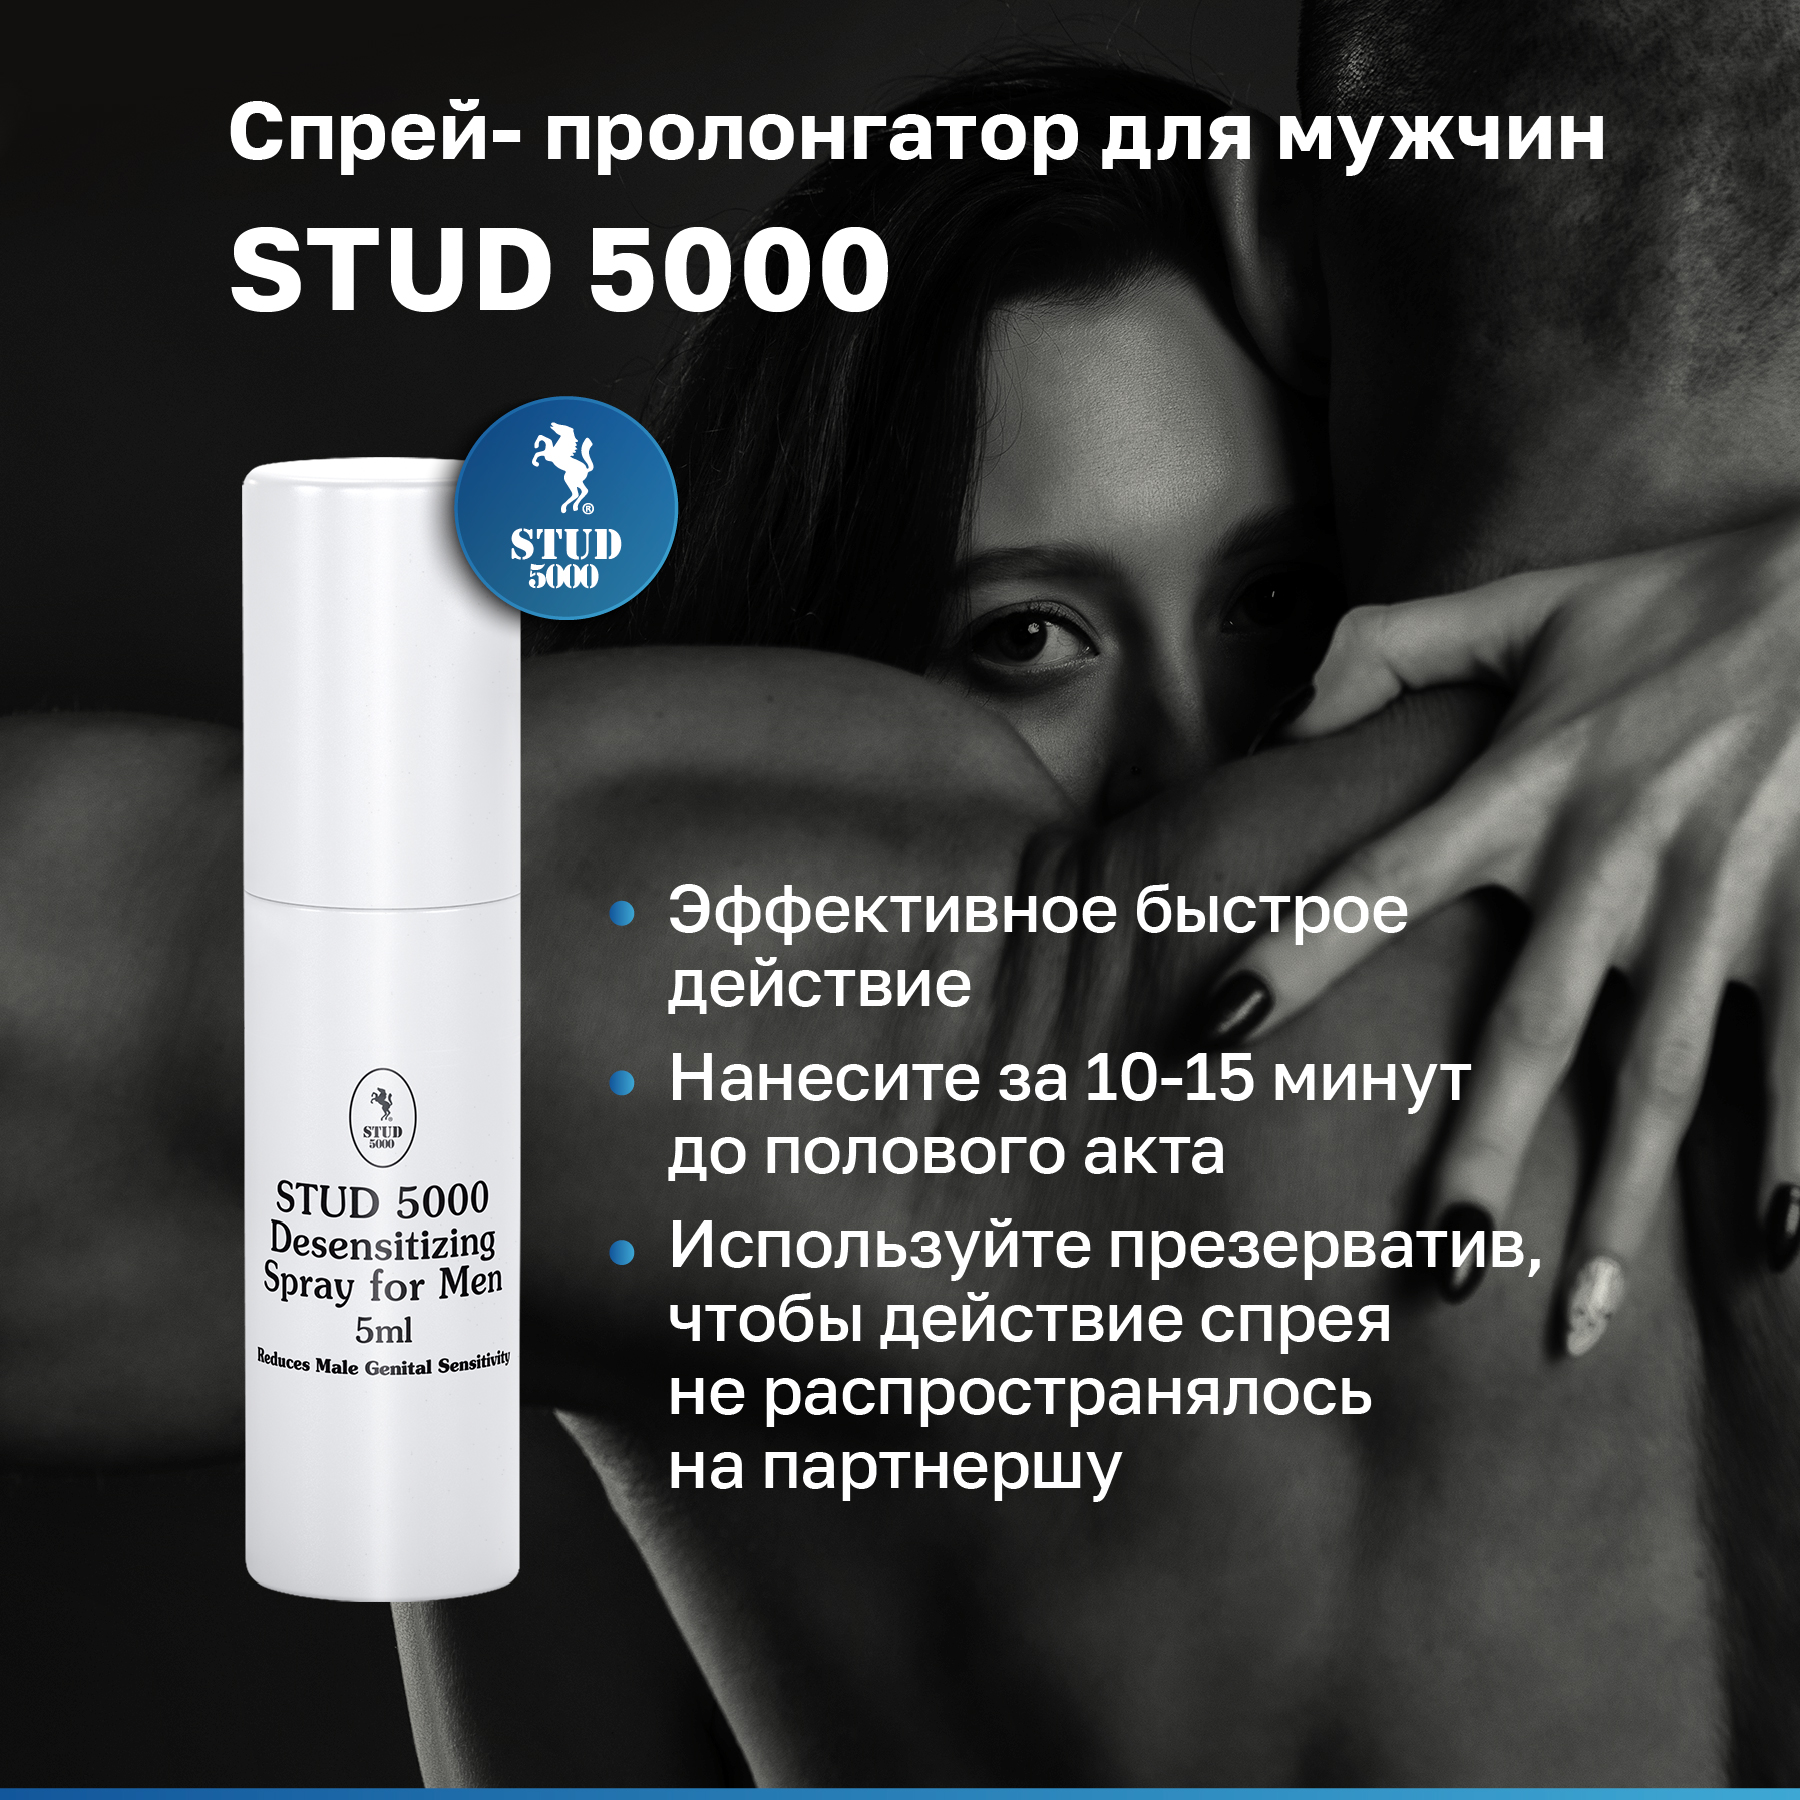 Stud 5000 - Спрей-пролонгатор для длительного секса, 5 мл. купить в секс шоп в Москве с доставкой по России